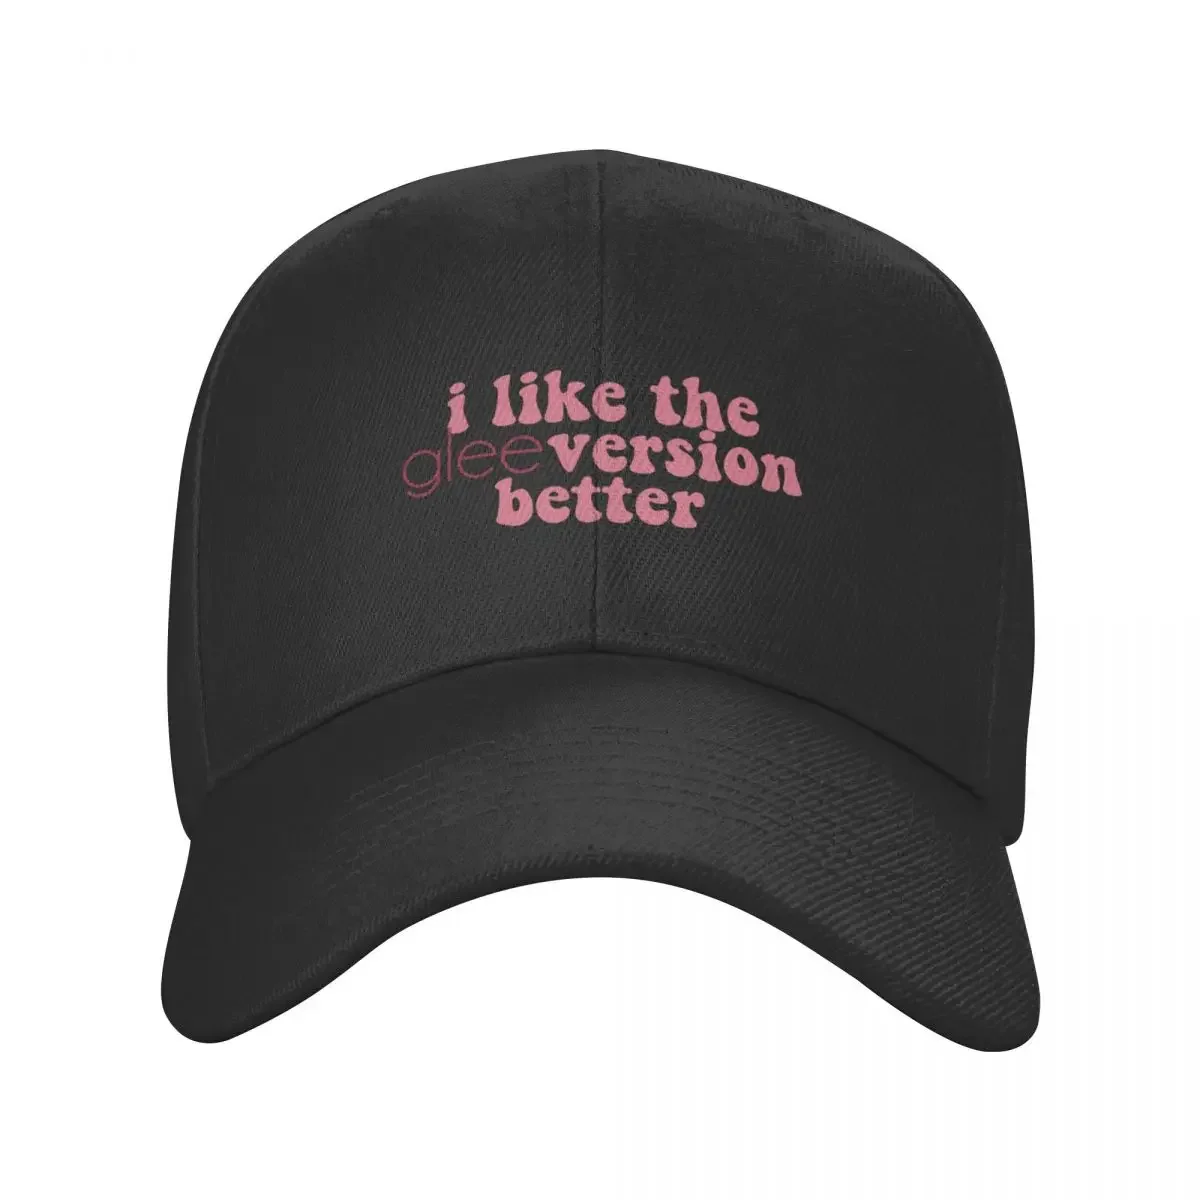 男性と女性のための野球帽,大きなサイズの帽子,ビーチハット,釣りキャップ,親友のようなバージョン